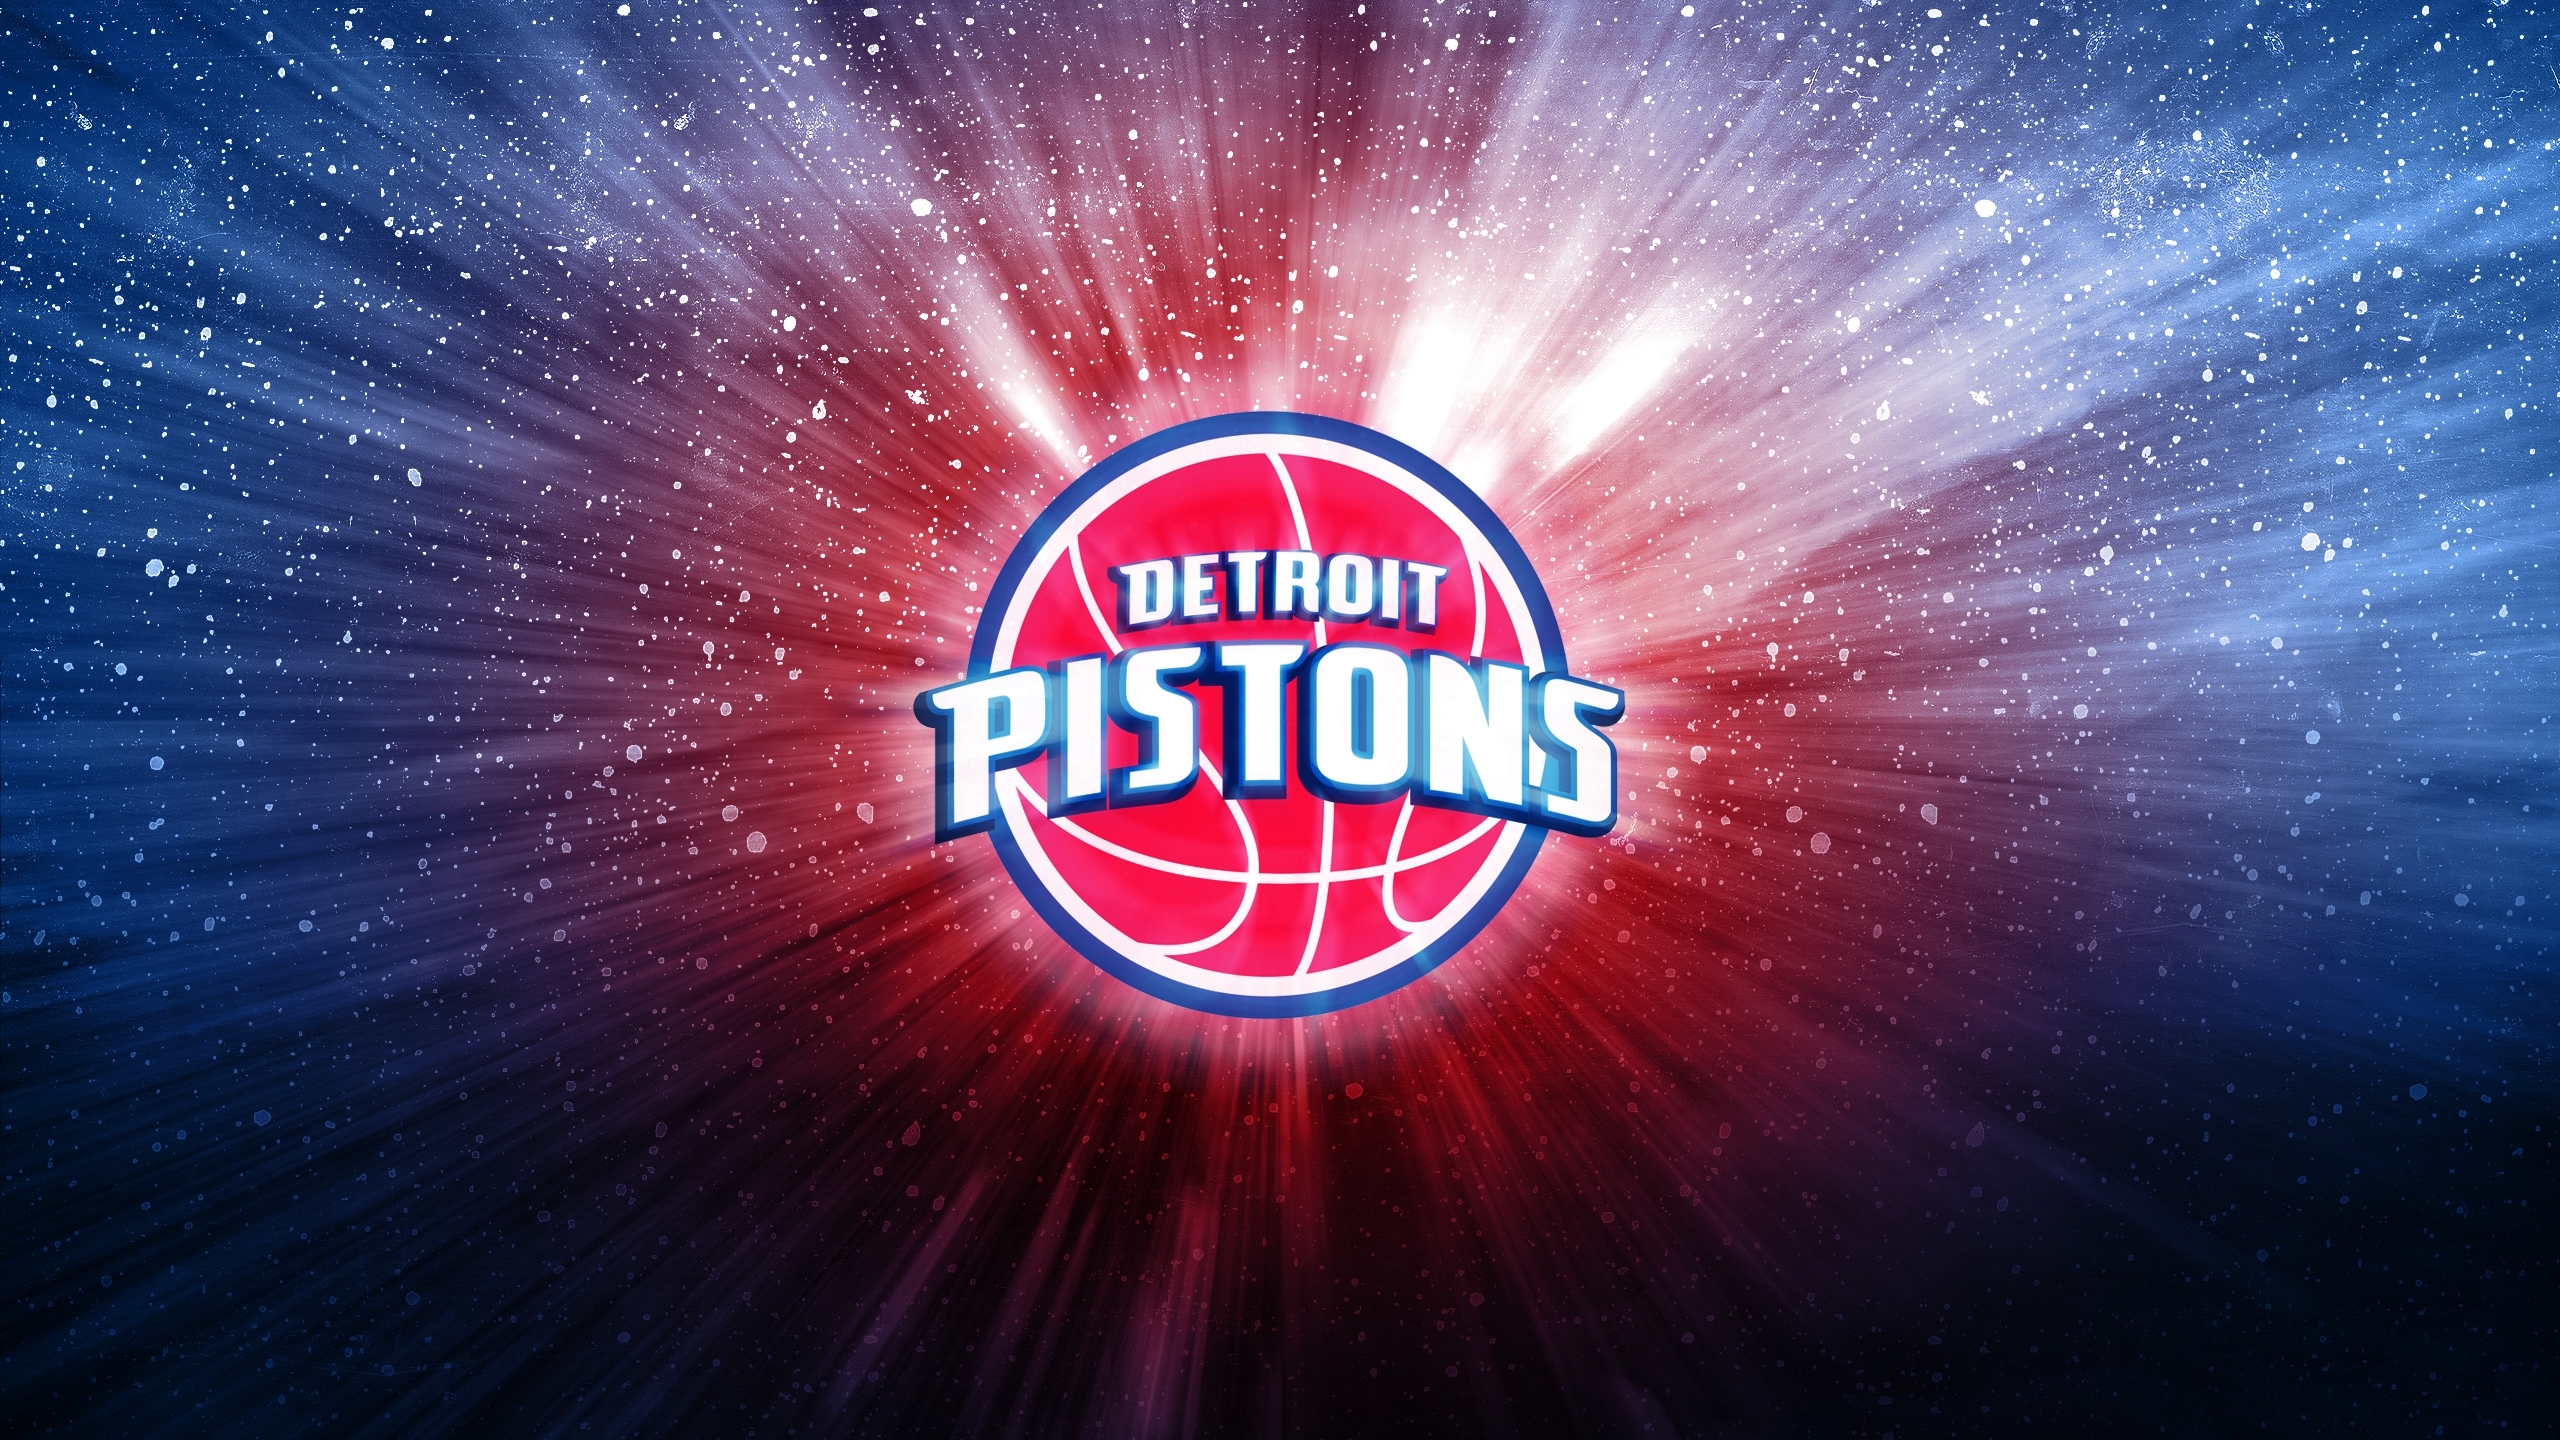 壁紙 2560x1440 バスケットボール ロゴエンブレム Detroit Pistons Nba スポーツ ダウンロード 写真